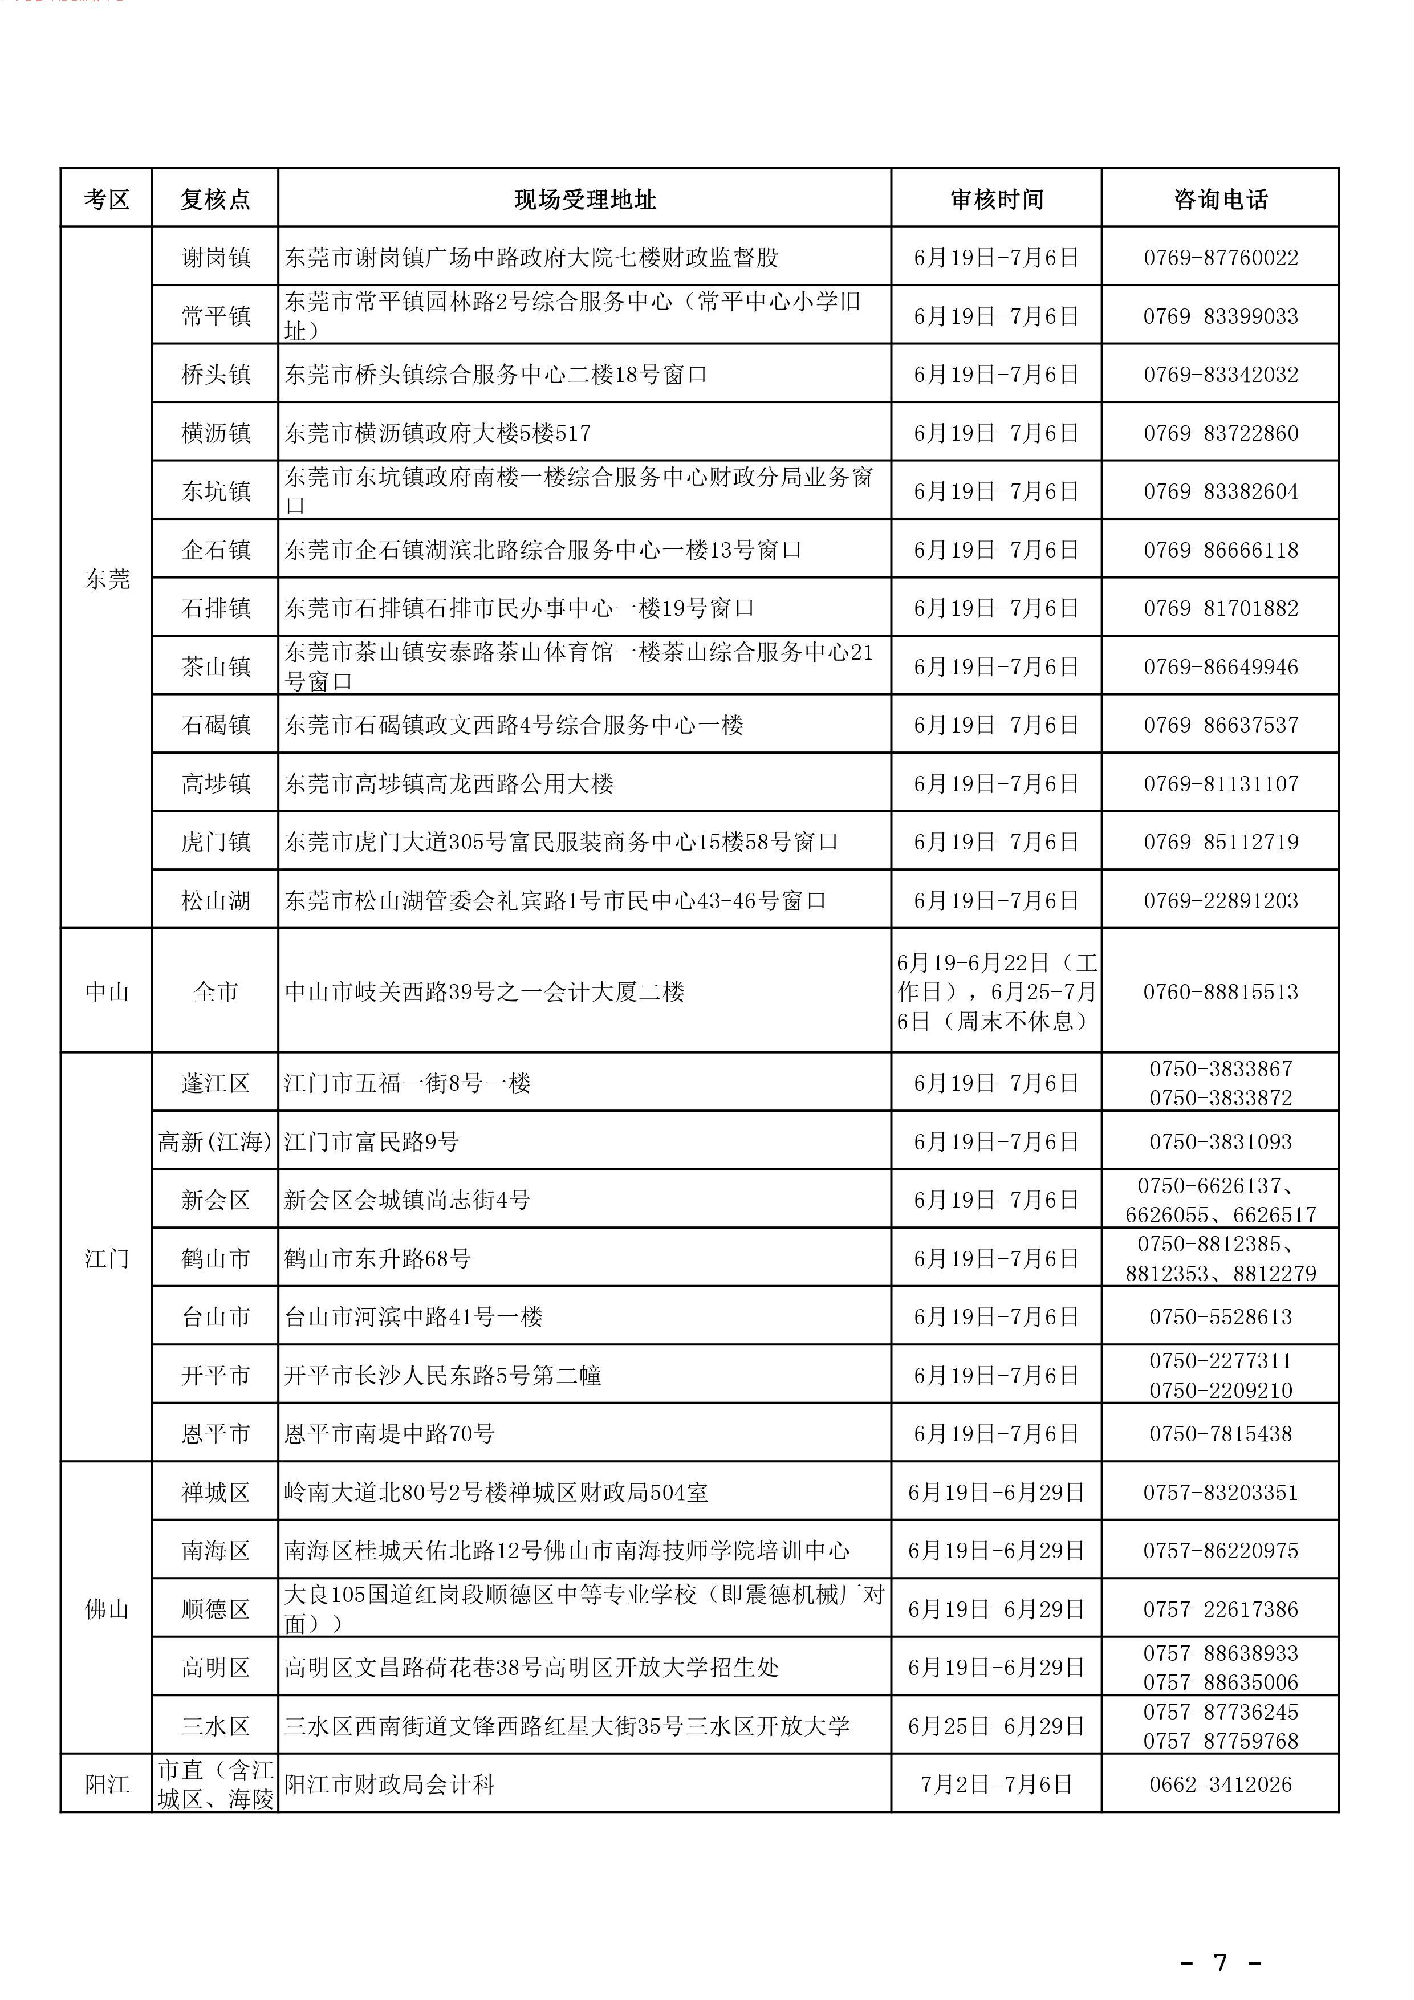 注意！明天起，可进行广东2018年初级会计师考后审核